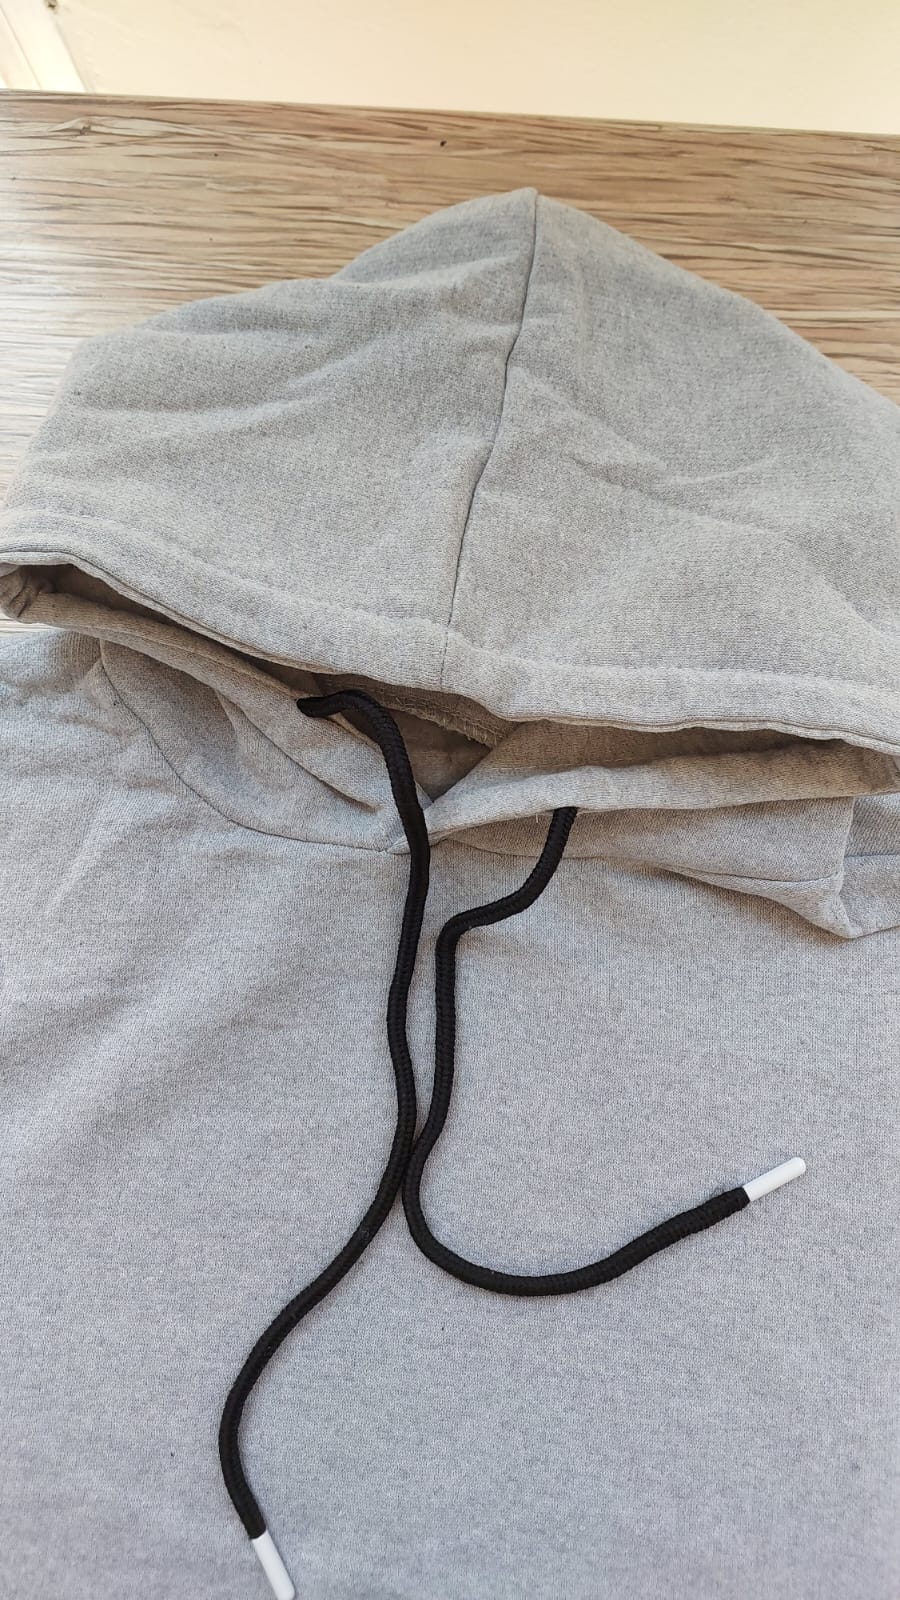 sweatshirt tasarla uygun fiyat yuvarlak yaka iki iplik 8